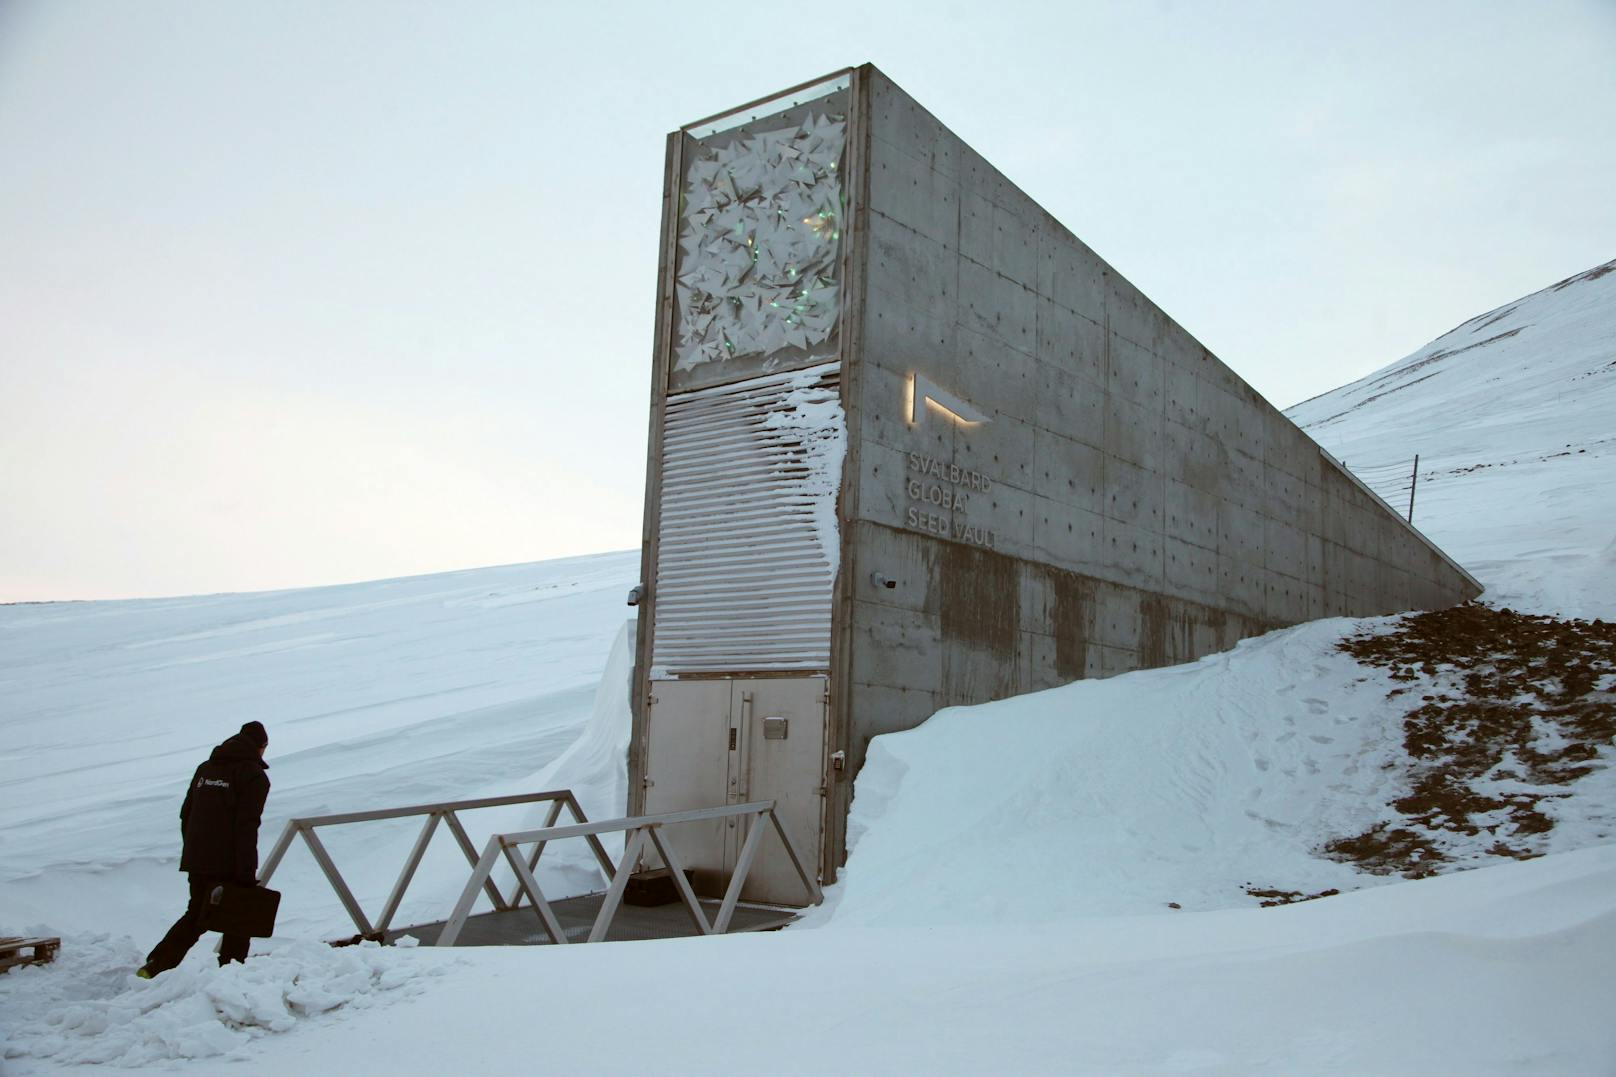 Übrigens wird hier auch das Saatgut aus der ganzen Welt gelagert. Der Samen-Tresor Svalbard Global Seed Vault soll die weltweite Ernährung und Artenvielfalt sichern. In Zeiten von Klimawandel und Bevölkerungswachstum sind die genetischen Ressourcen eine Art Zukunftsversicherung der Menschheit im Katastrophenfall.